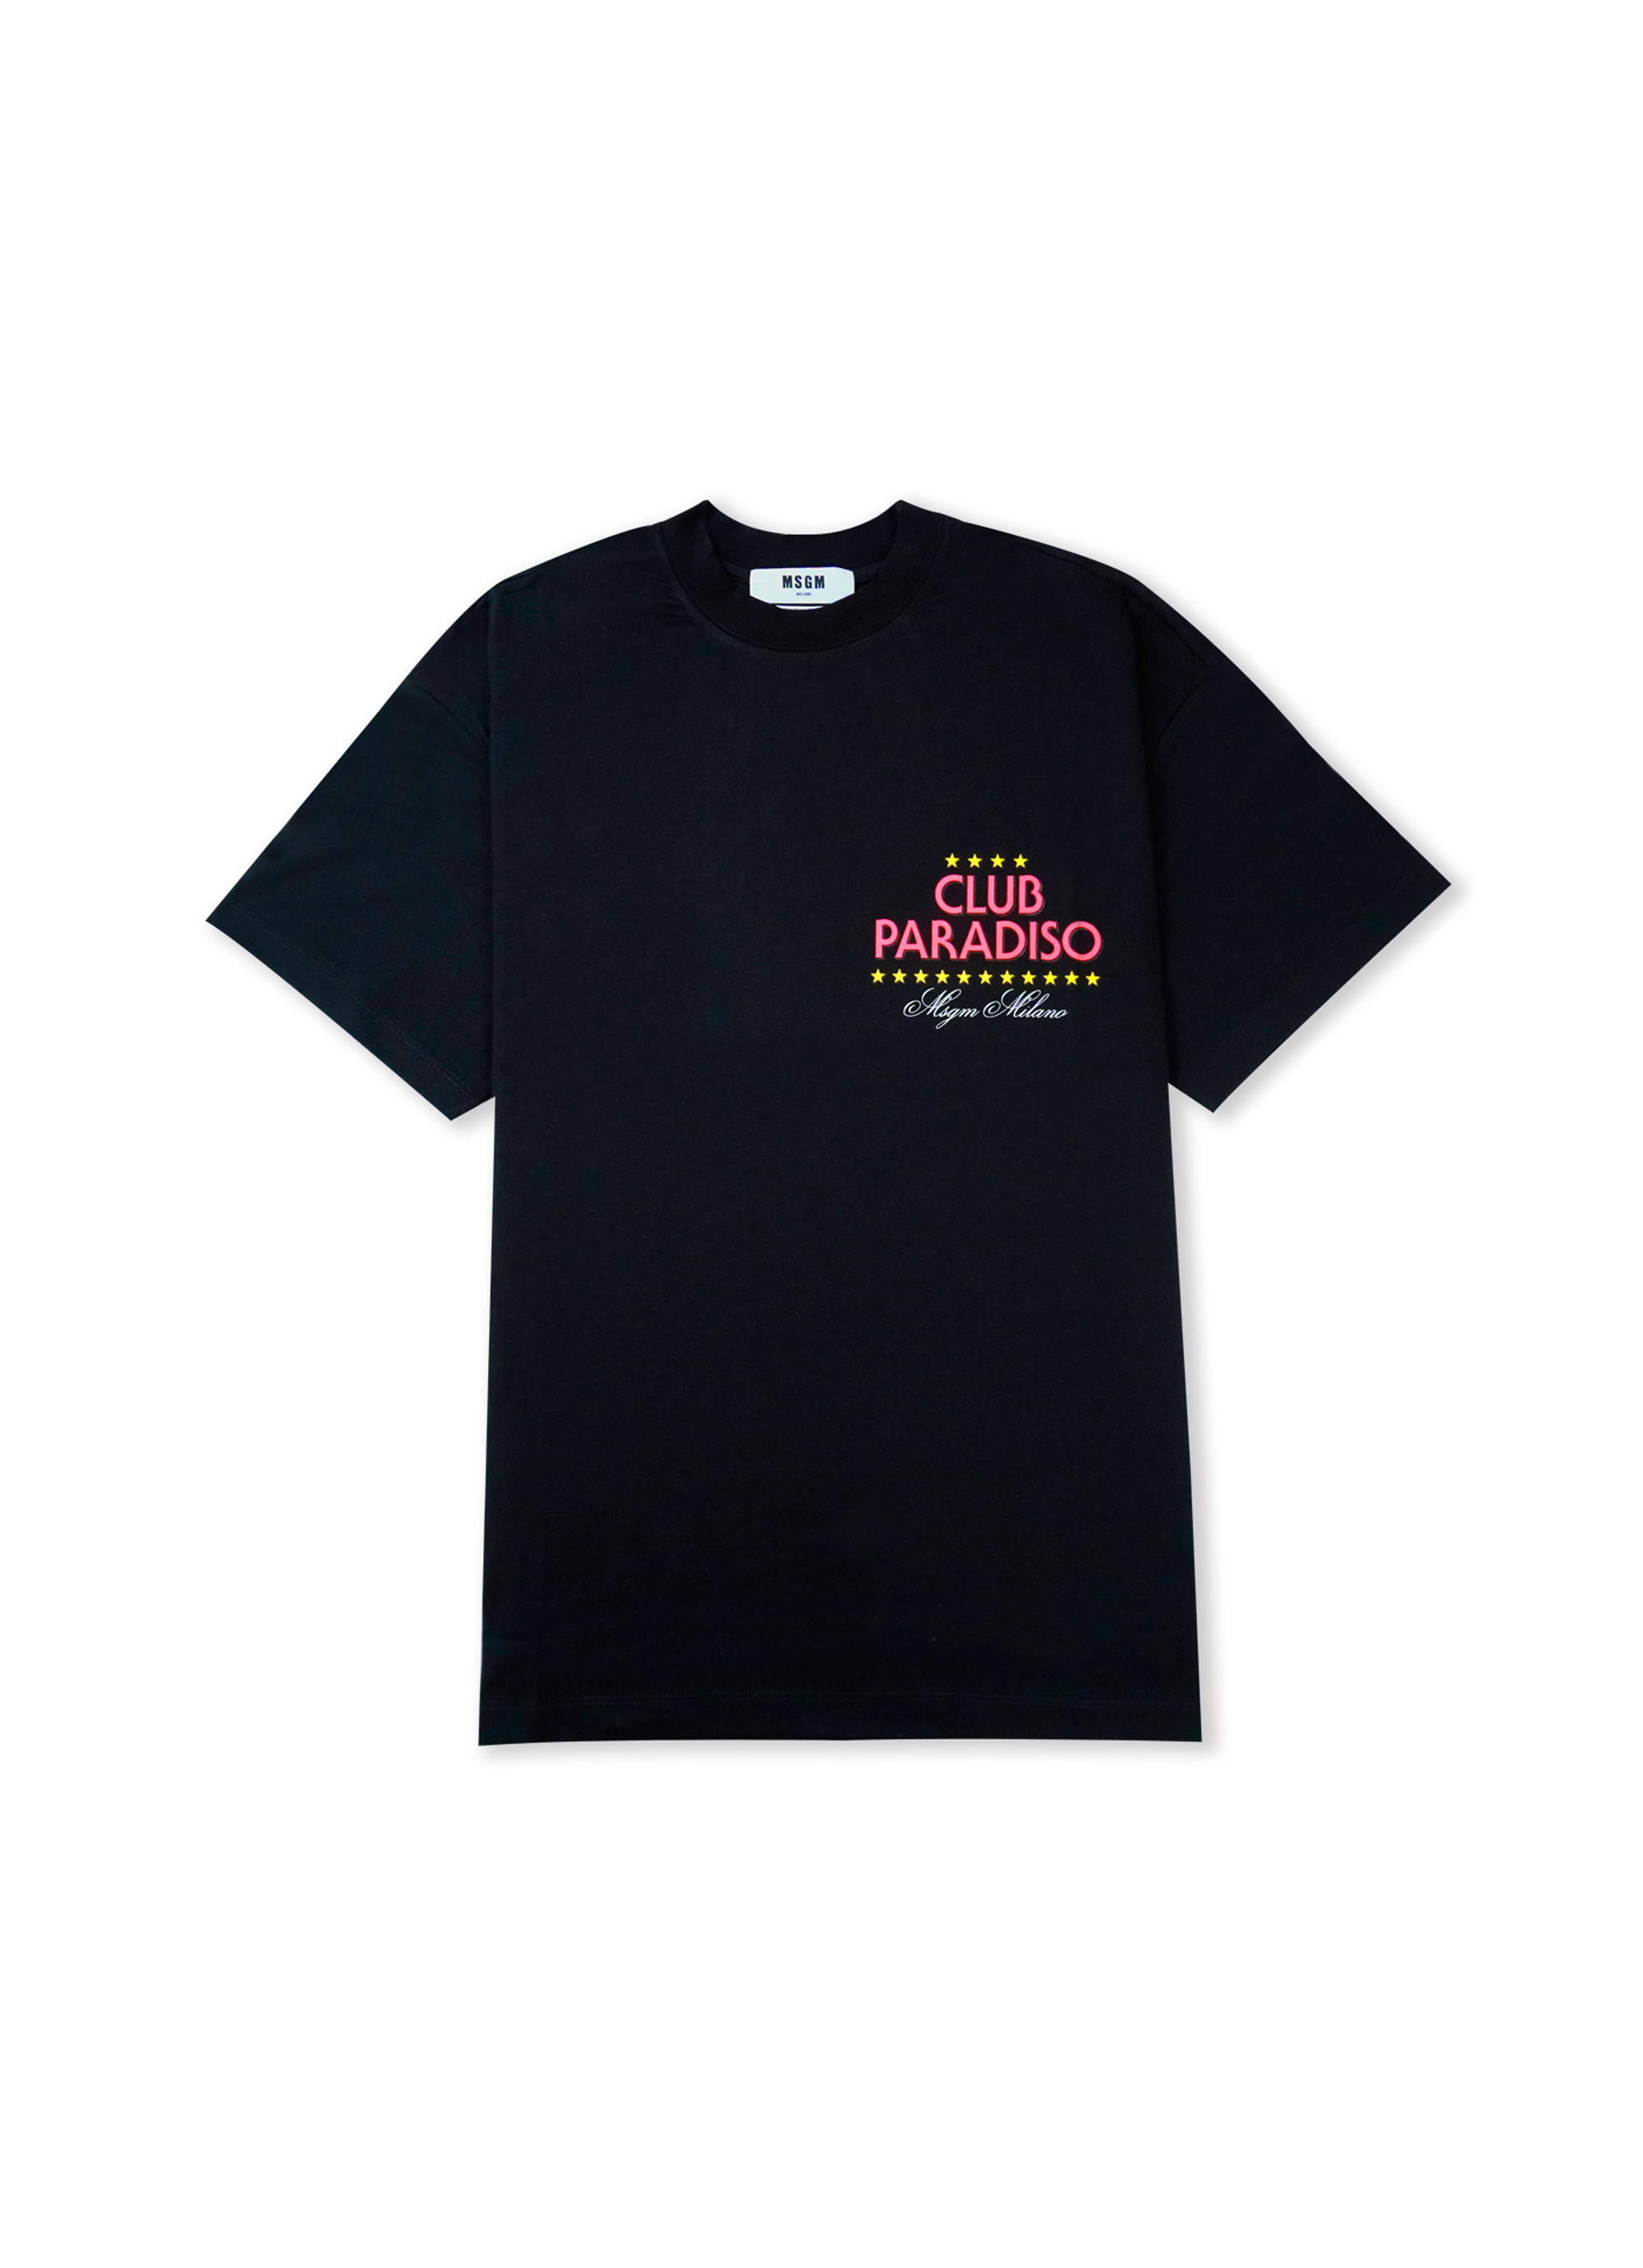 「CLUB PARADISO」グラフィックTシャツ 詳細画像 ブラック 1